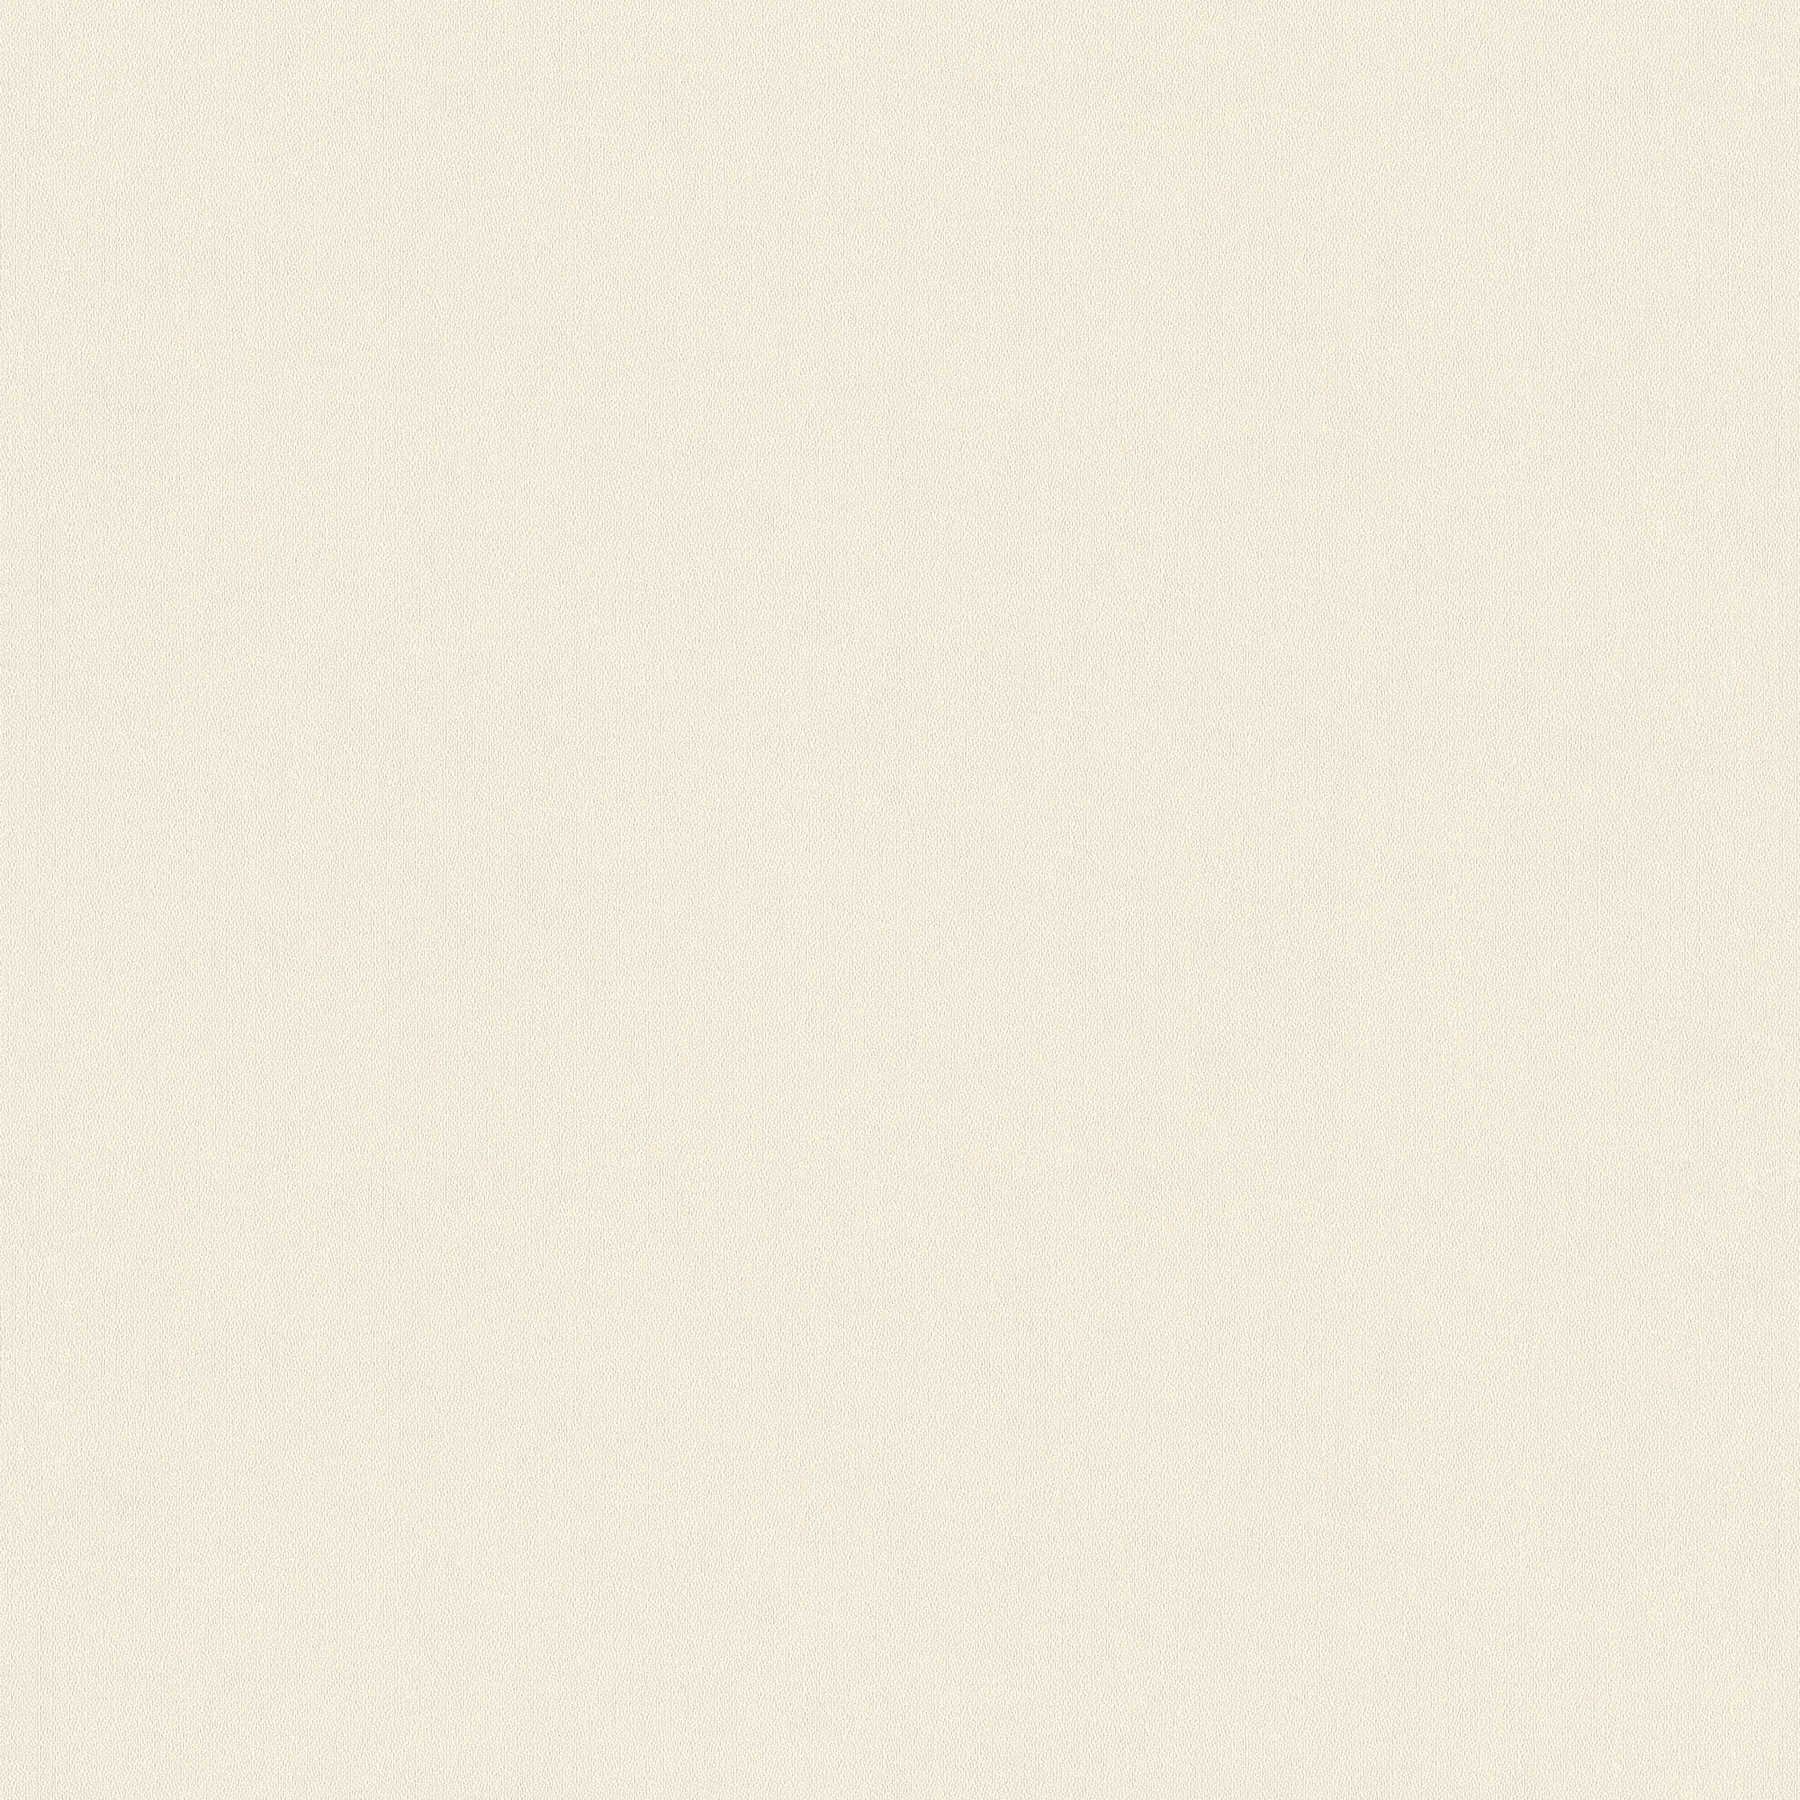 Papier peint uni intissé, double largeur 106cm - beige, crème, gris
